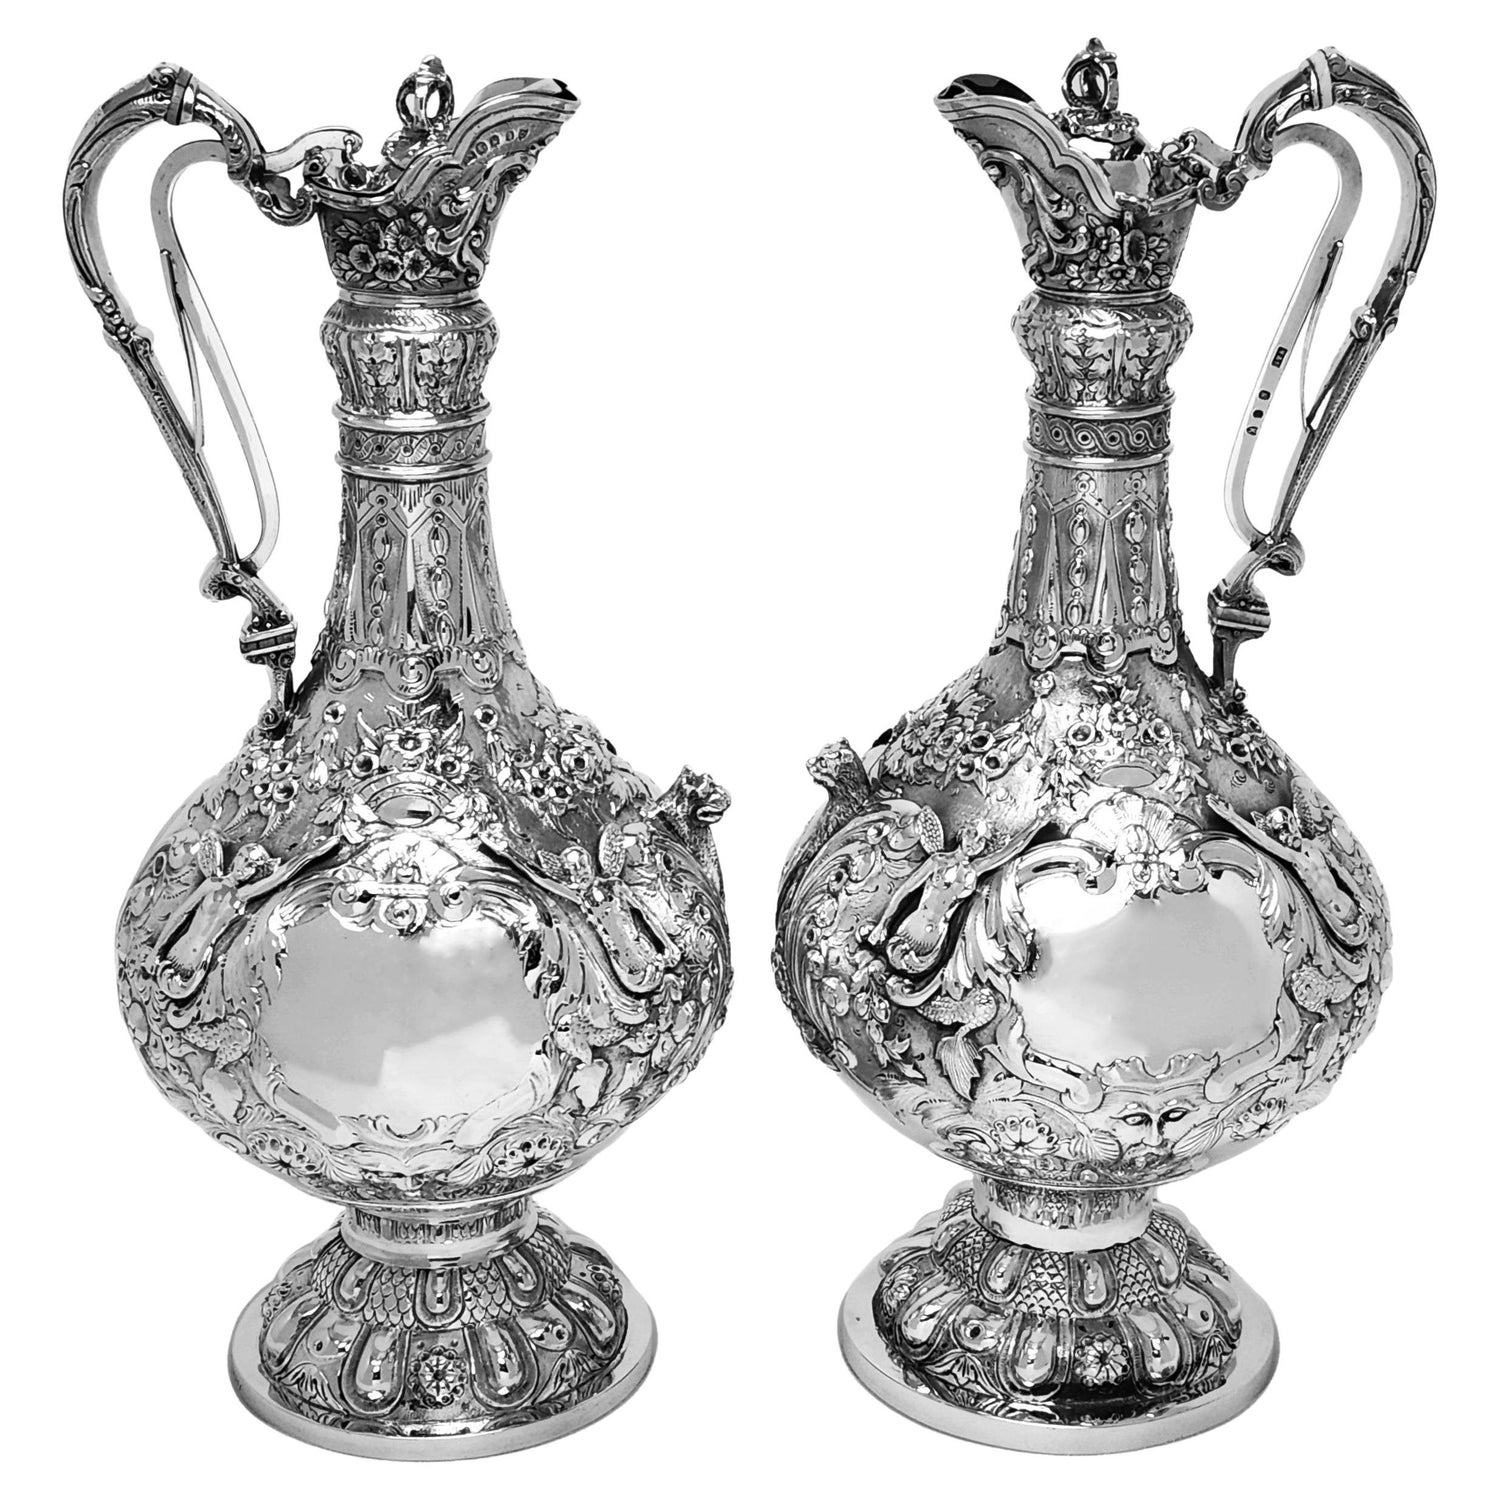 Pair Antique Irish Victorian Silver Armada Jugs Claret Wine Decanters 1877 - 80